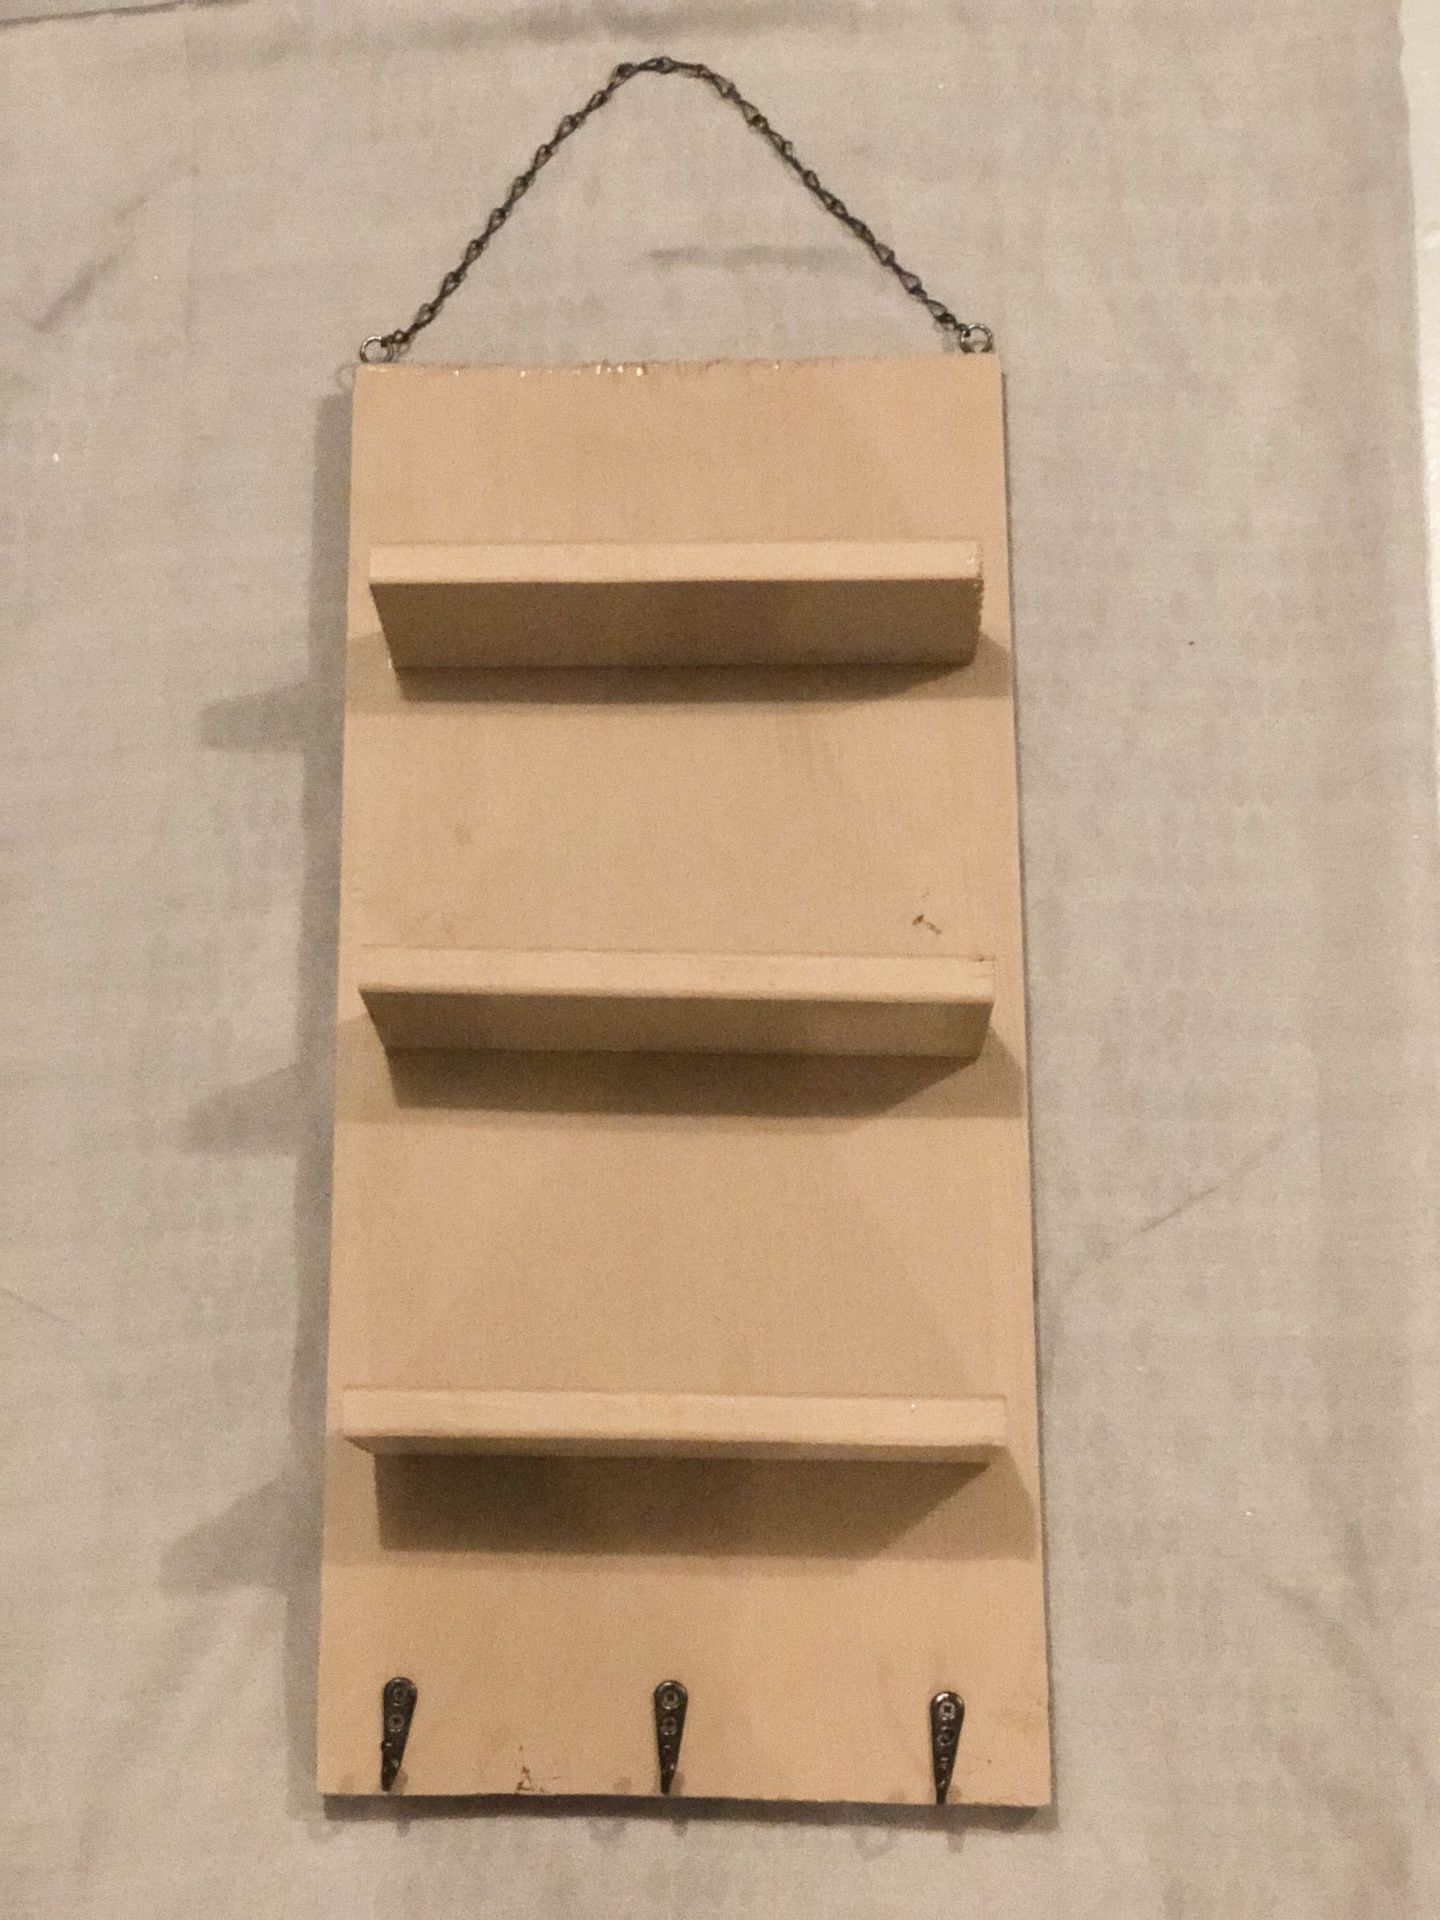 Handmade wooden shelf